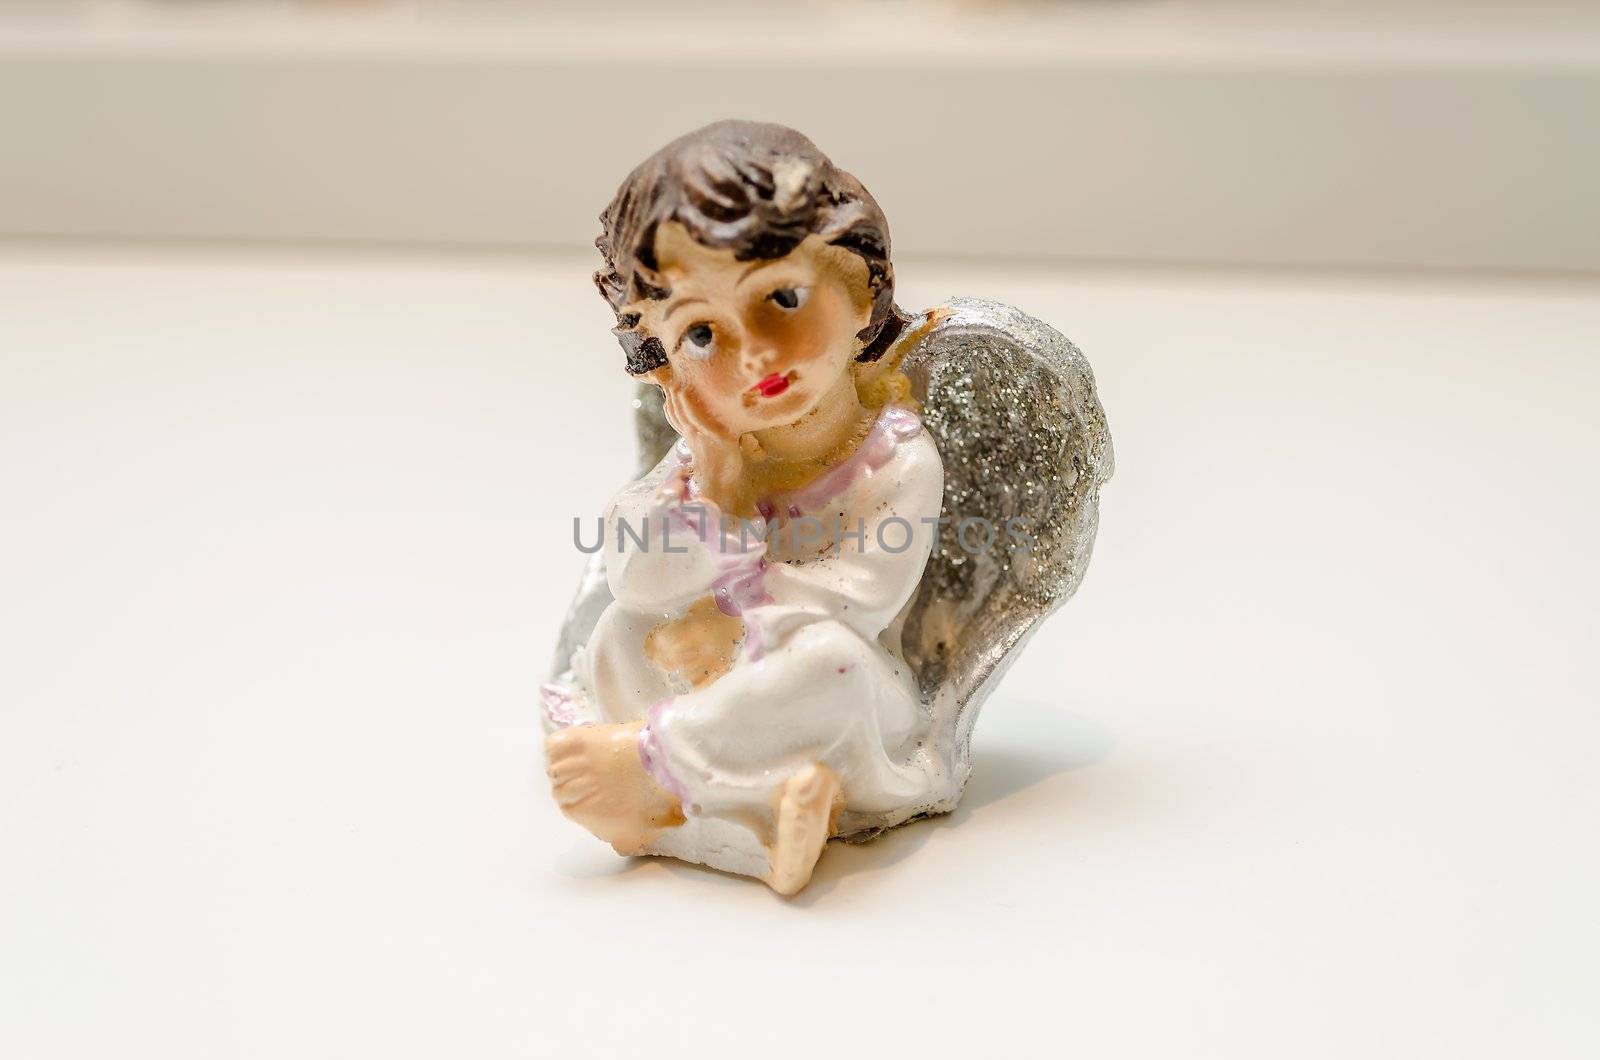 Ceramic Statuette of a Melancholic Cute Angel by marcorubino